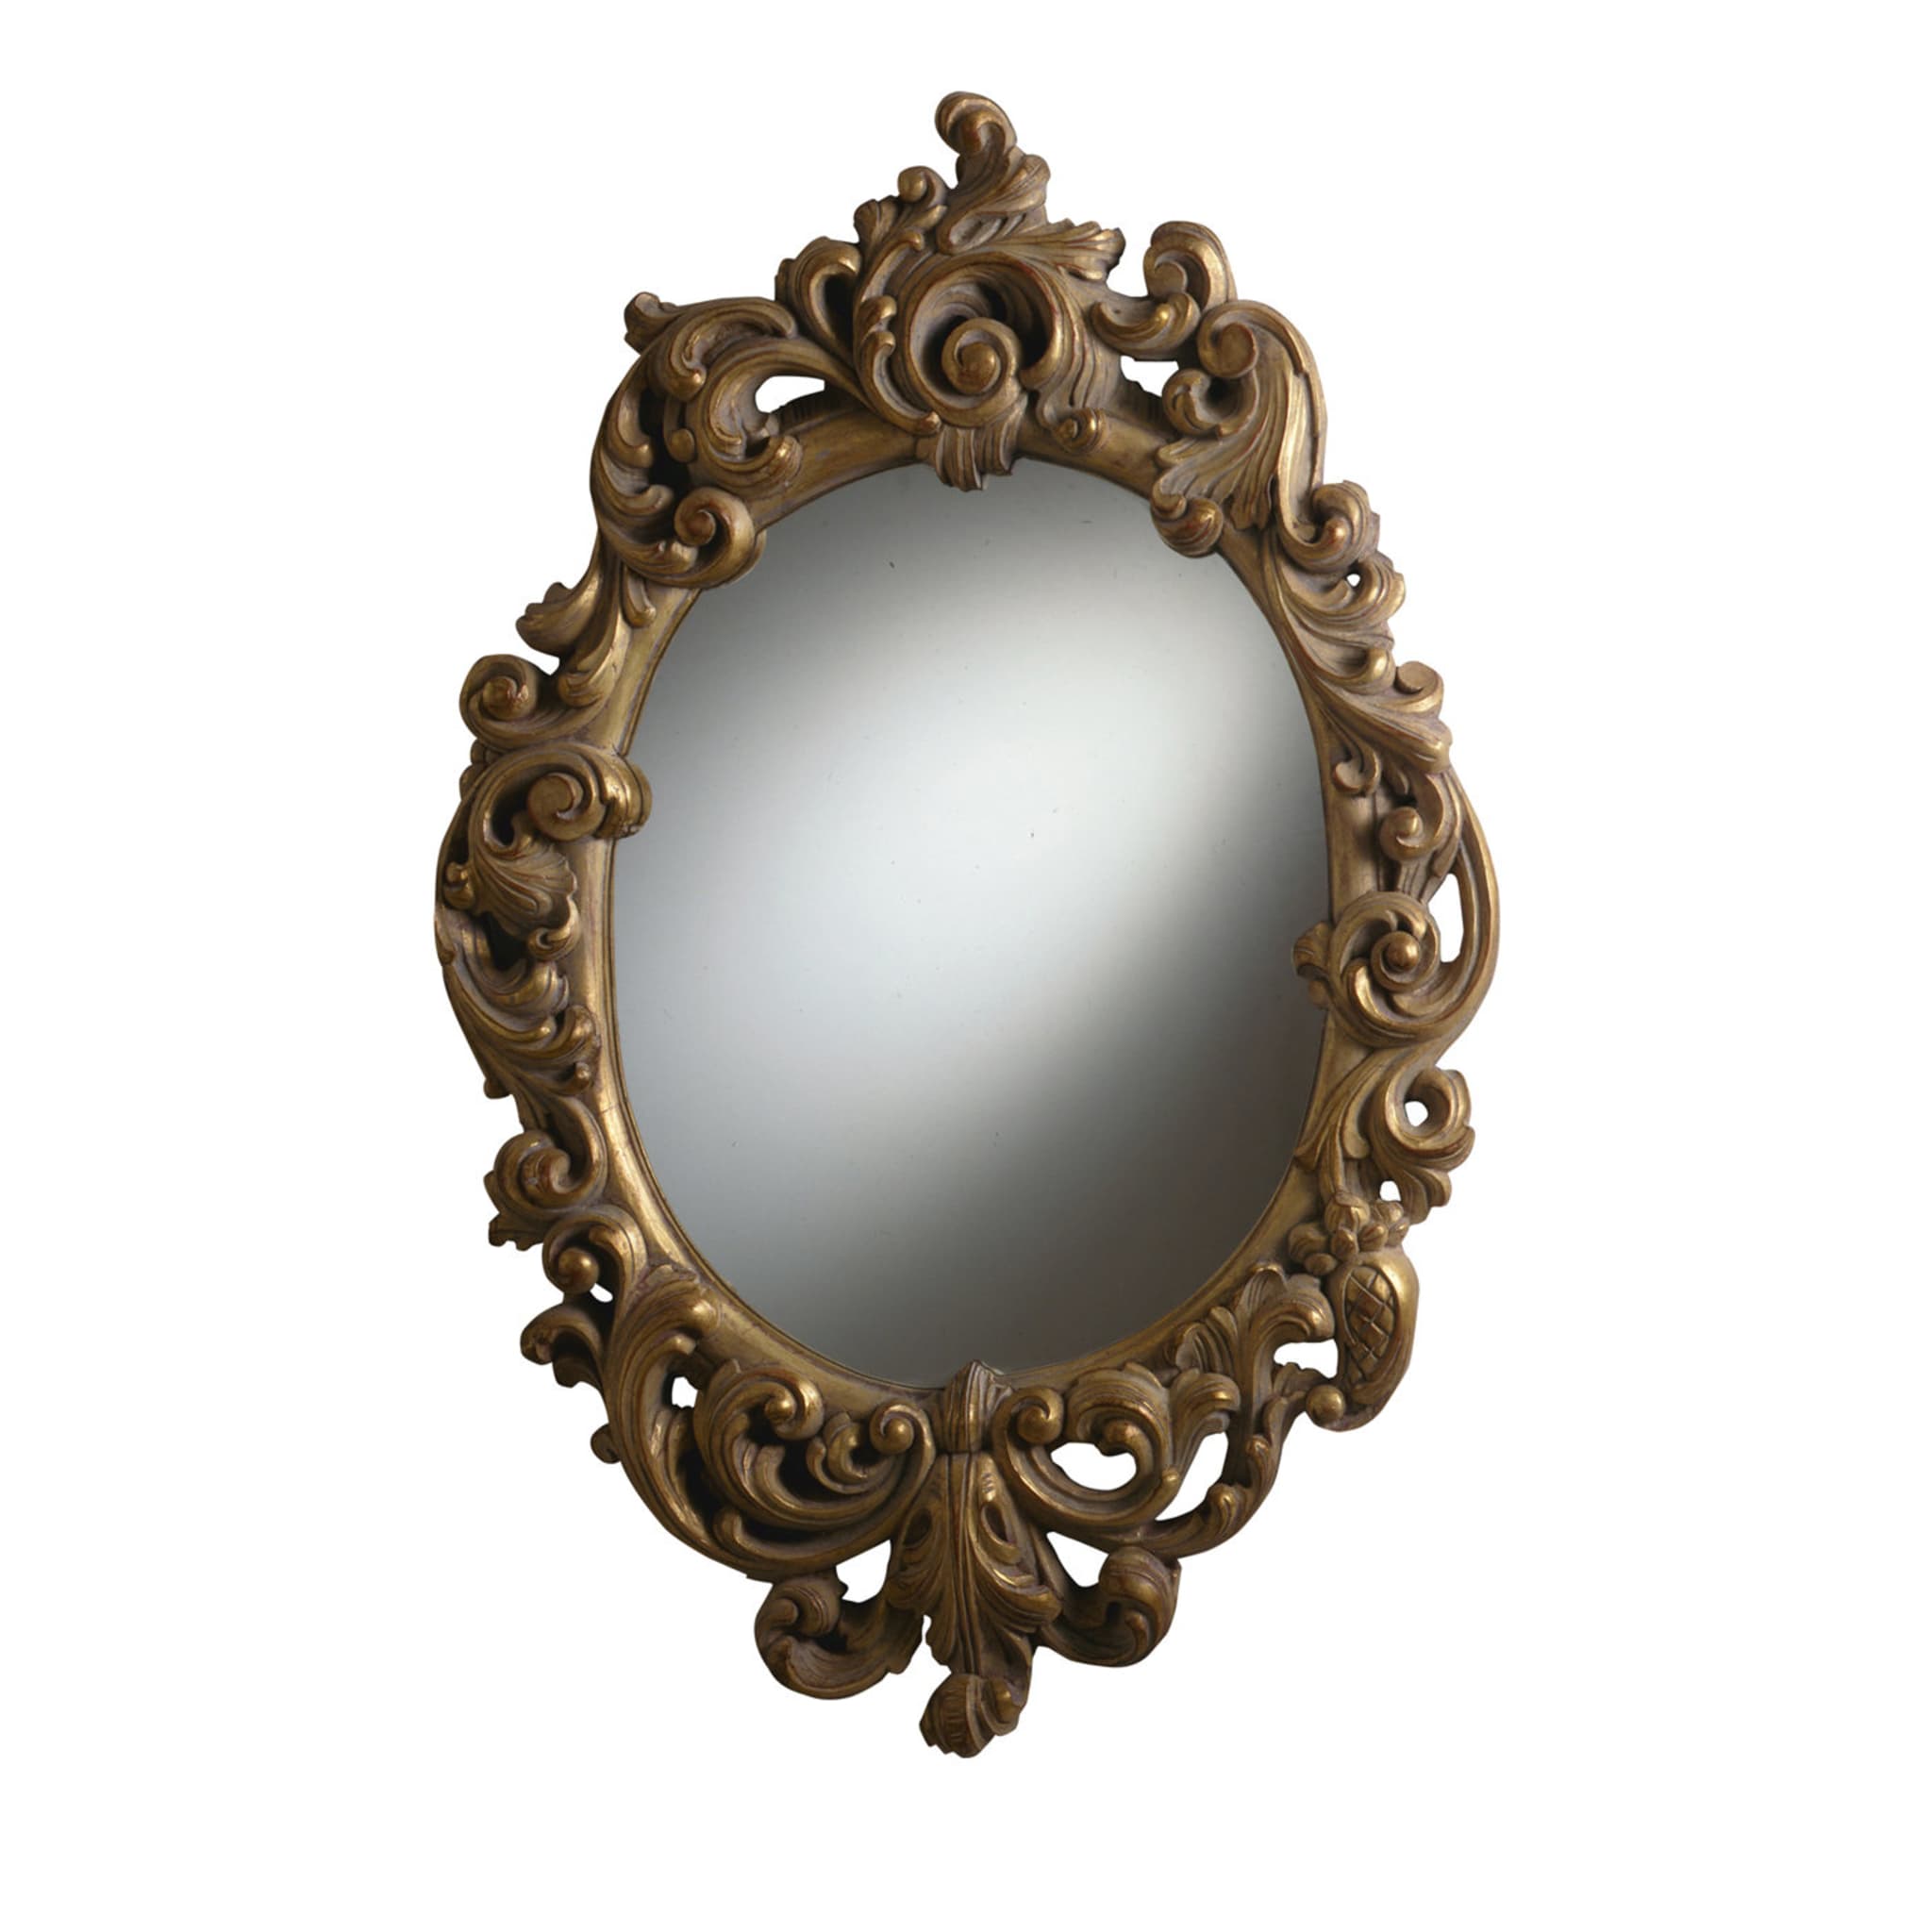 Specchio barocco #1 - Vista principale